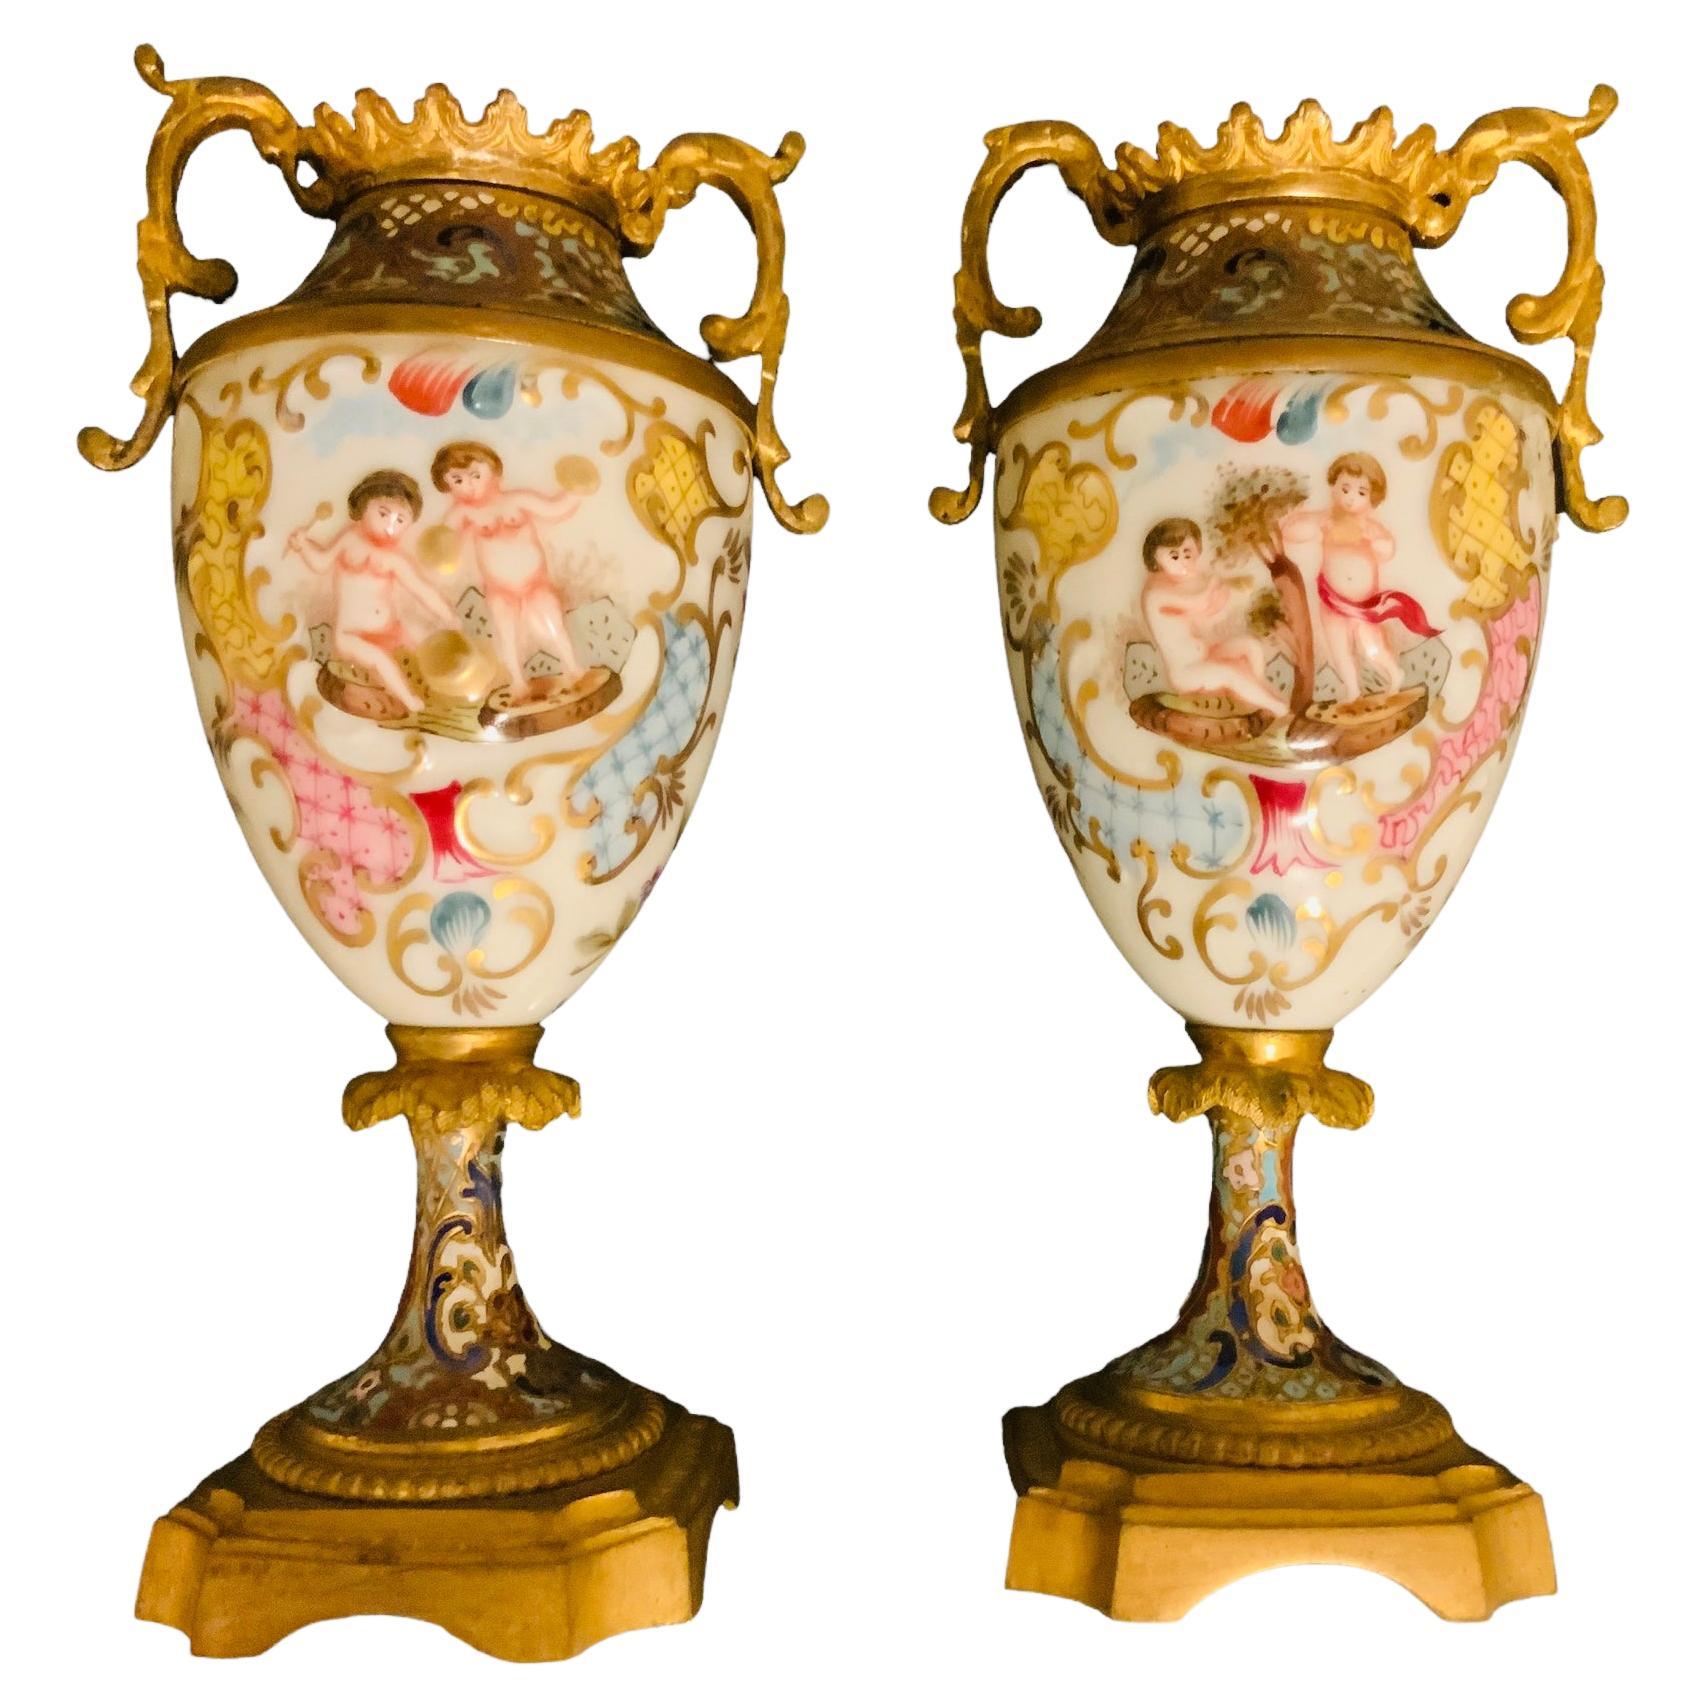 Il s'agit d'une paire de petites urnes en porcelaine de Champleve et Capodimonte. Il représente une paire d'urnes avec un motif champlevé coloré de fleurs et de rinceaux au niveau du cou, des épaules et des pieds. Le corps de l'urne est en